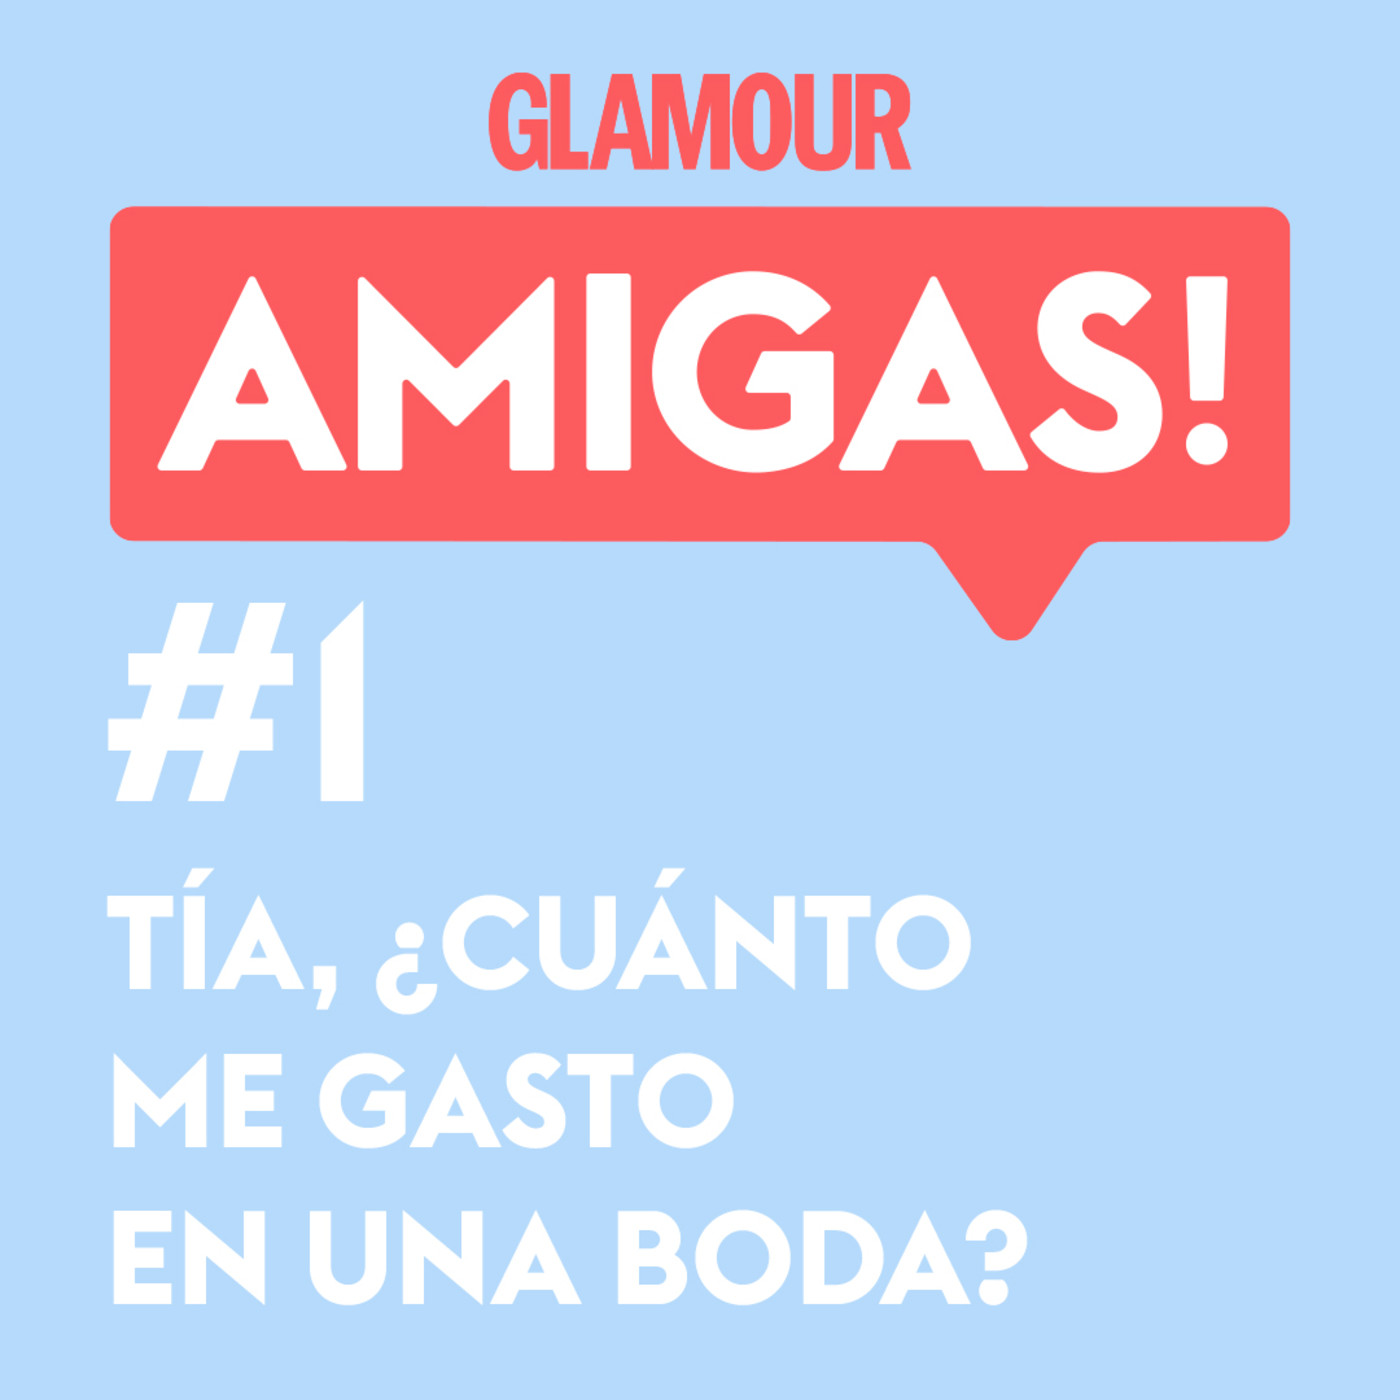 Glamour Amigas! #1: Tía, ¿cuánto me gasto en una boda? Con Analía Plaza.